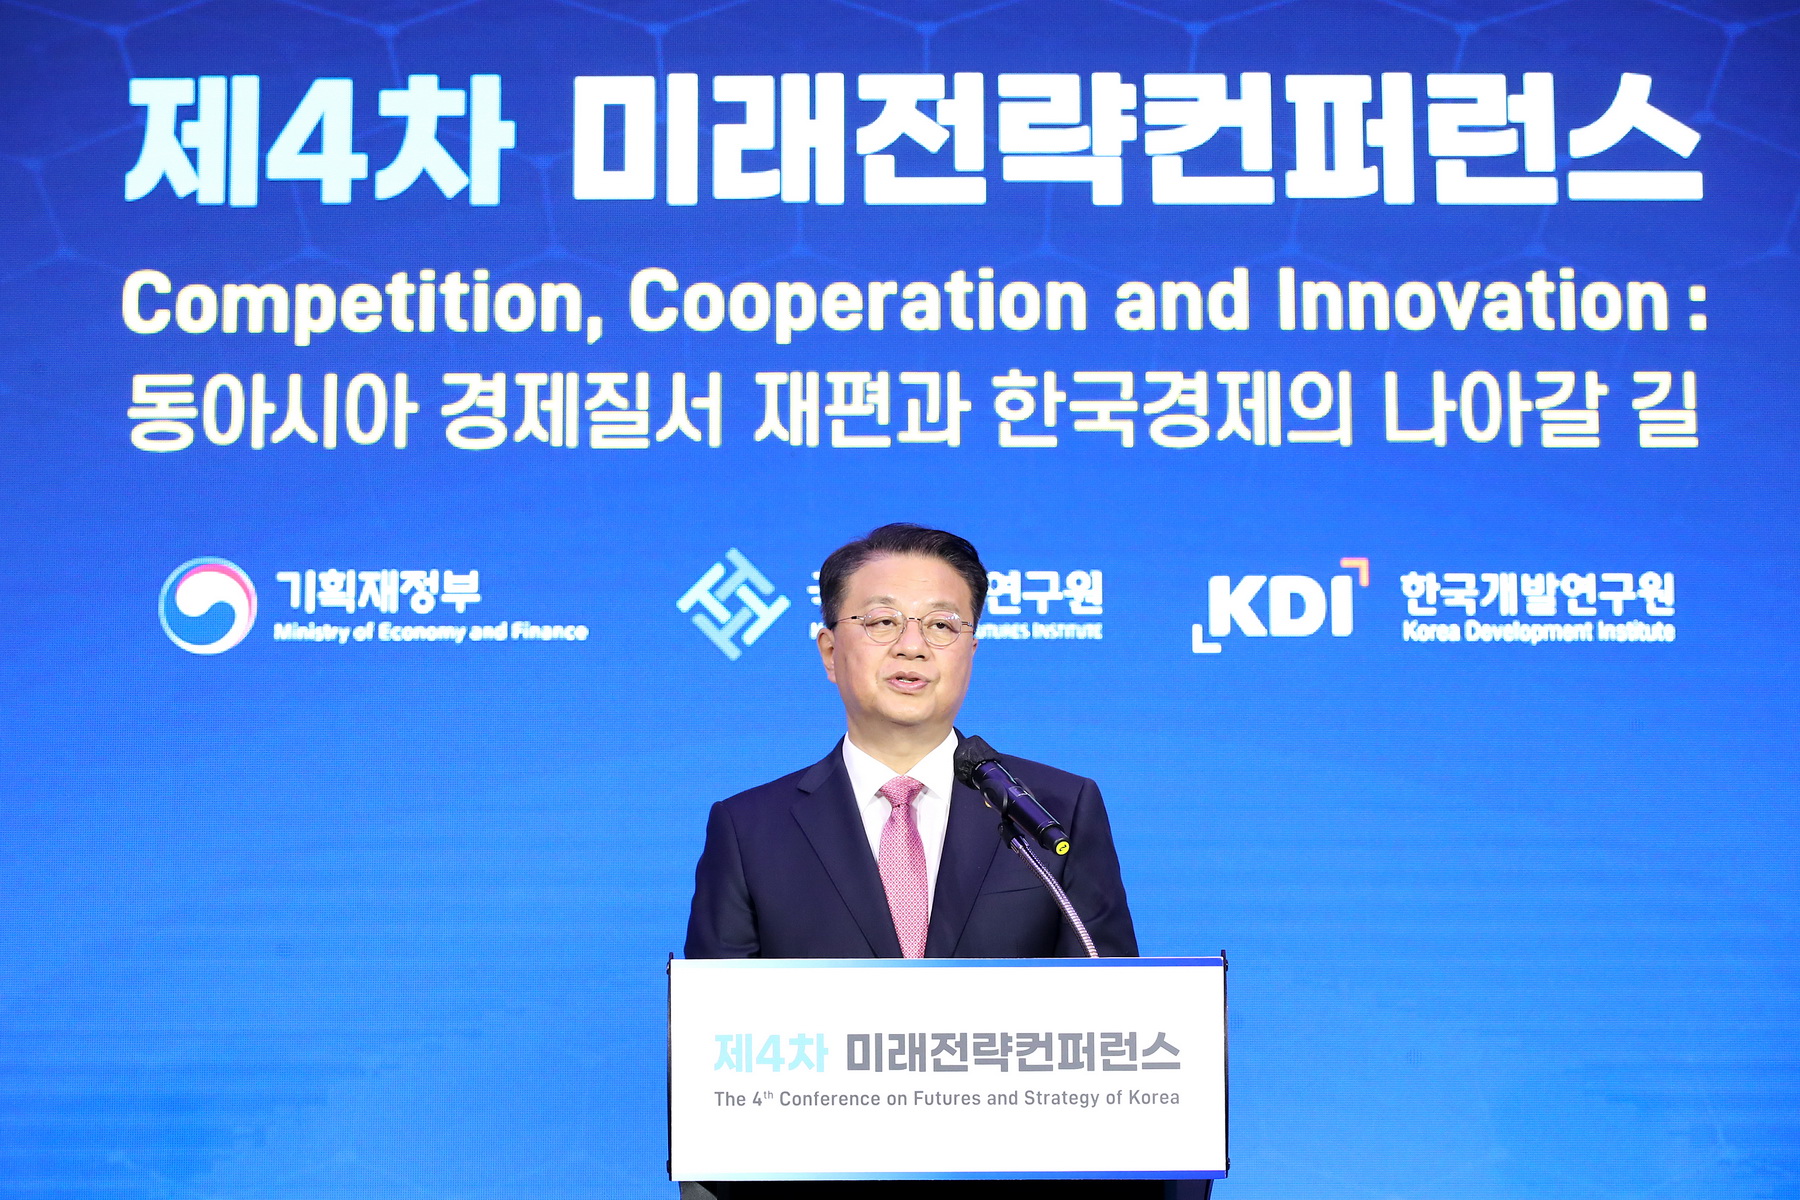 [09.07] 제4회 미래전략 컨퍼런스 - 동아시아 경제질서 재편과 한국경제의 나아갈 길2